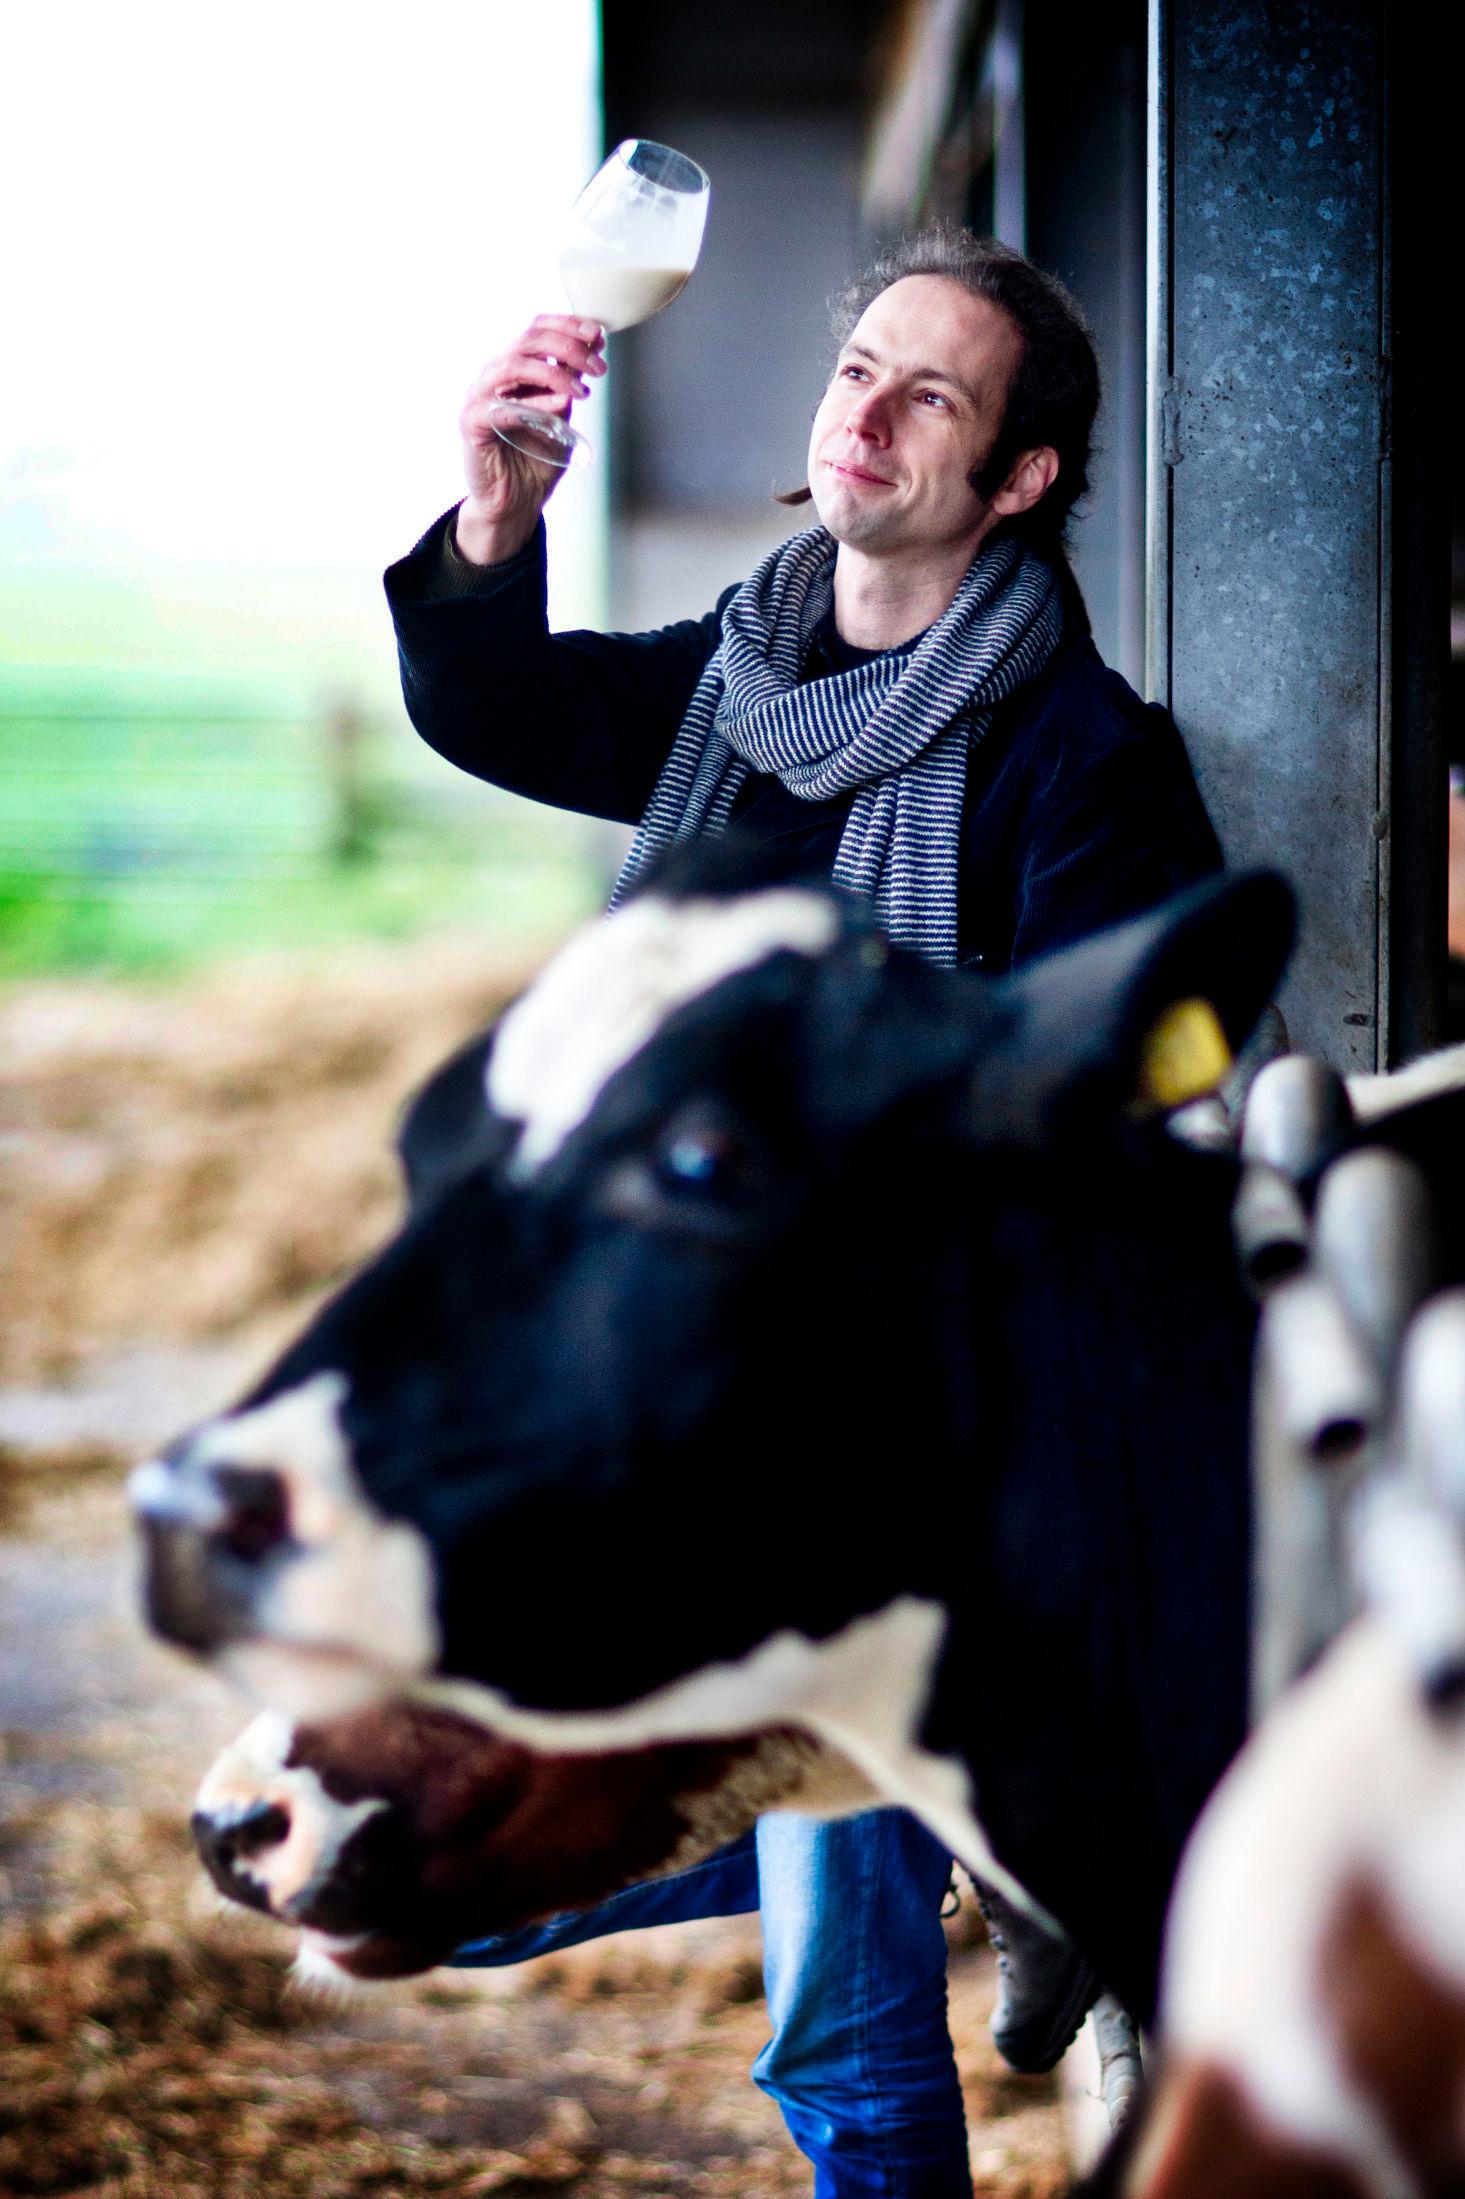 SER: Når Bas de Groot skal vurdere en melk ser han på den for å legge merke til fargenyanser. Foto: Guus Schoonewille